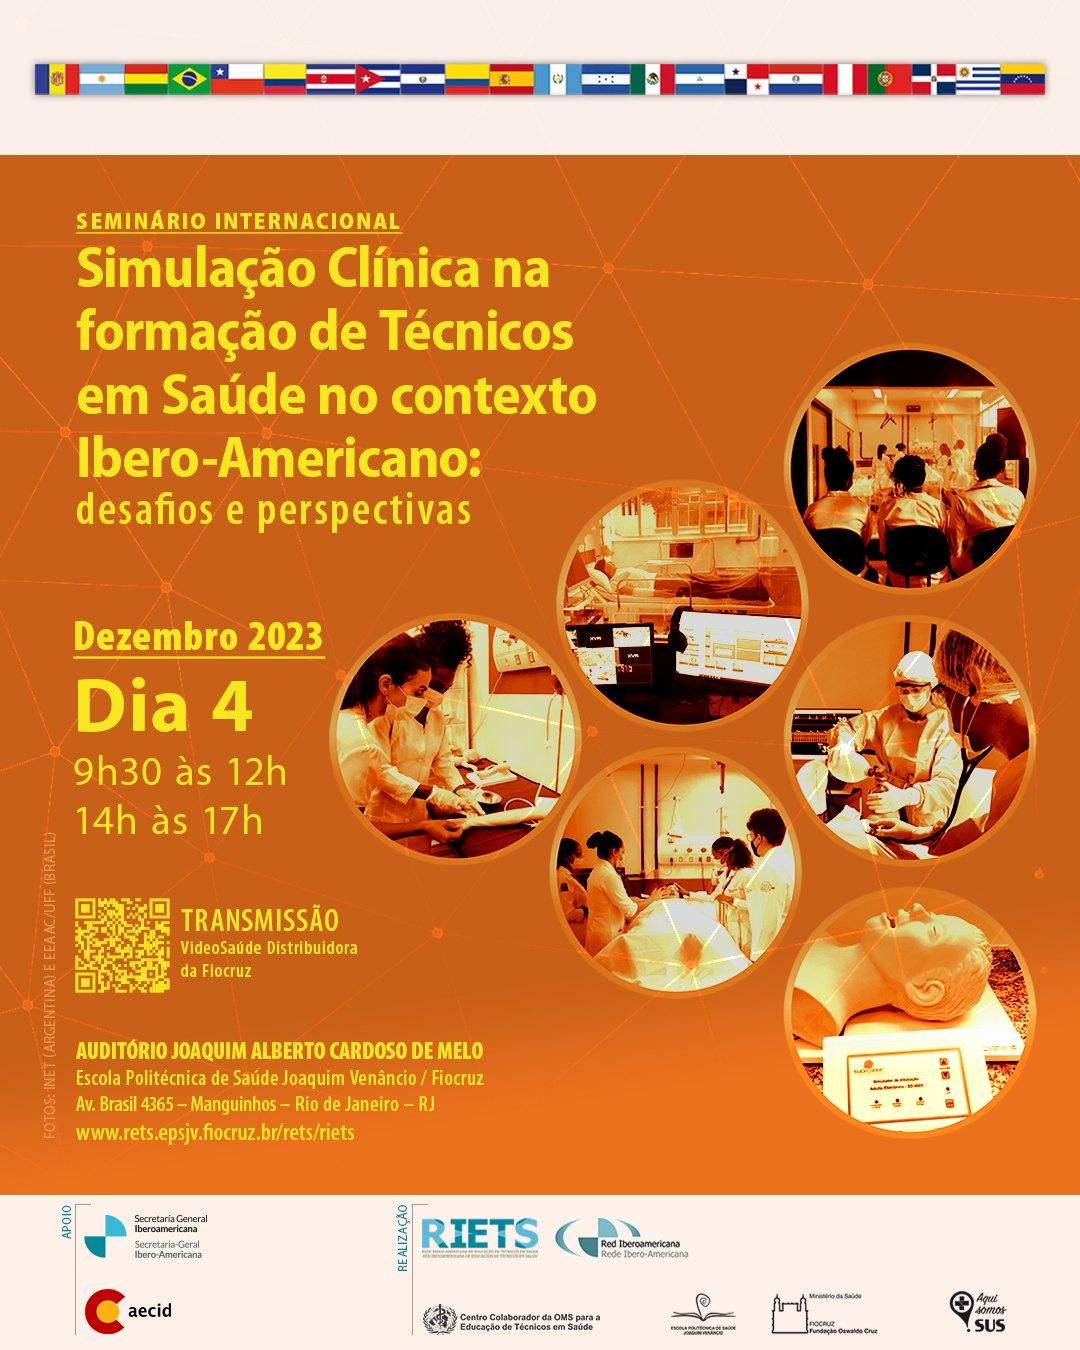 Seminário Internacional: Simulação Clínica na Formação de Técnicos em Saúde no contexto Ibero-Americano - desafios e perspectivas